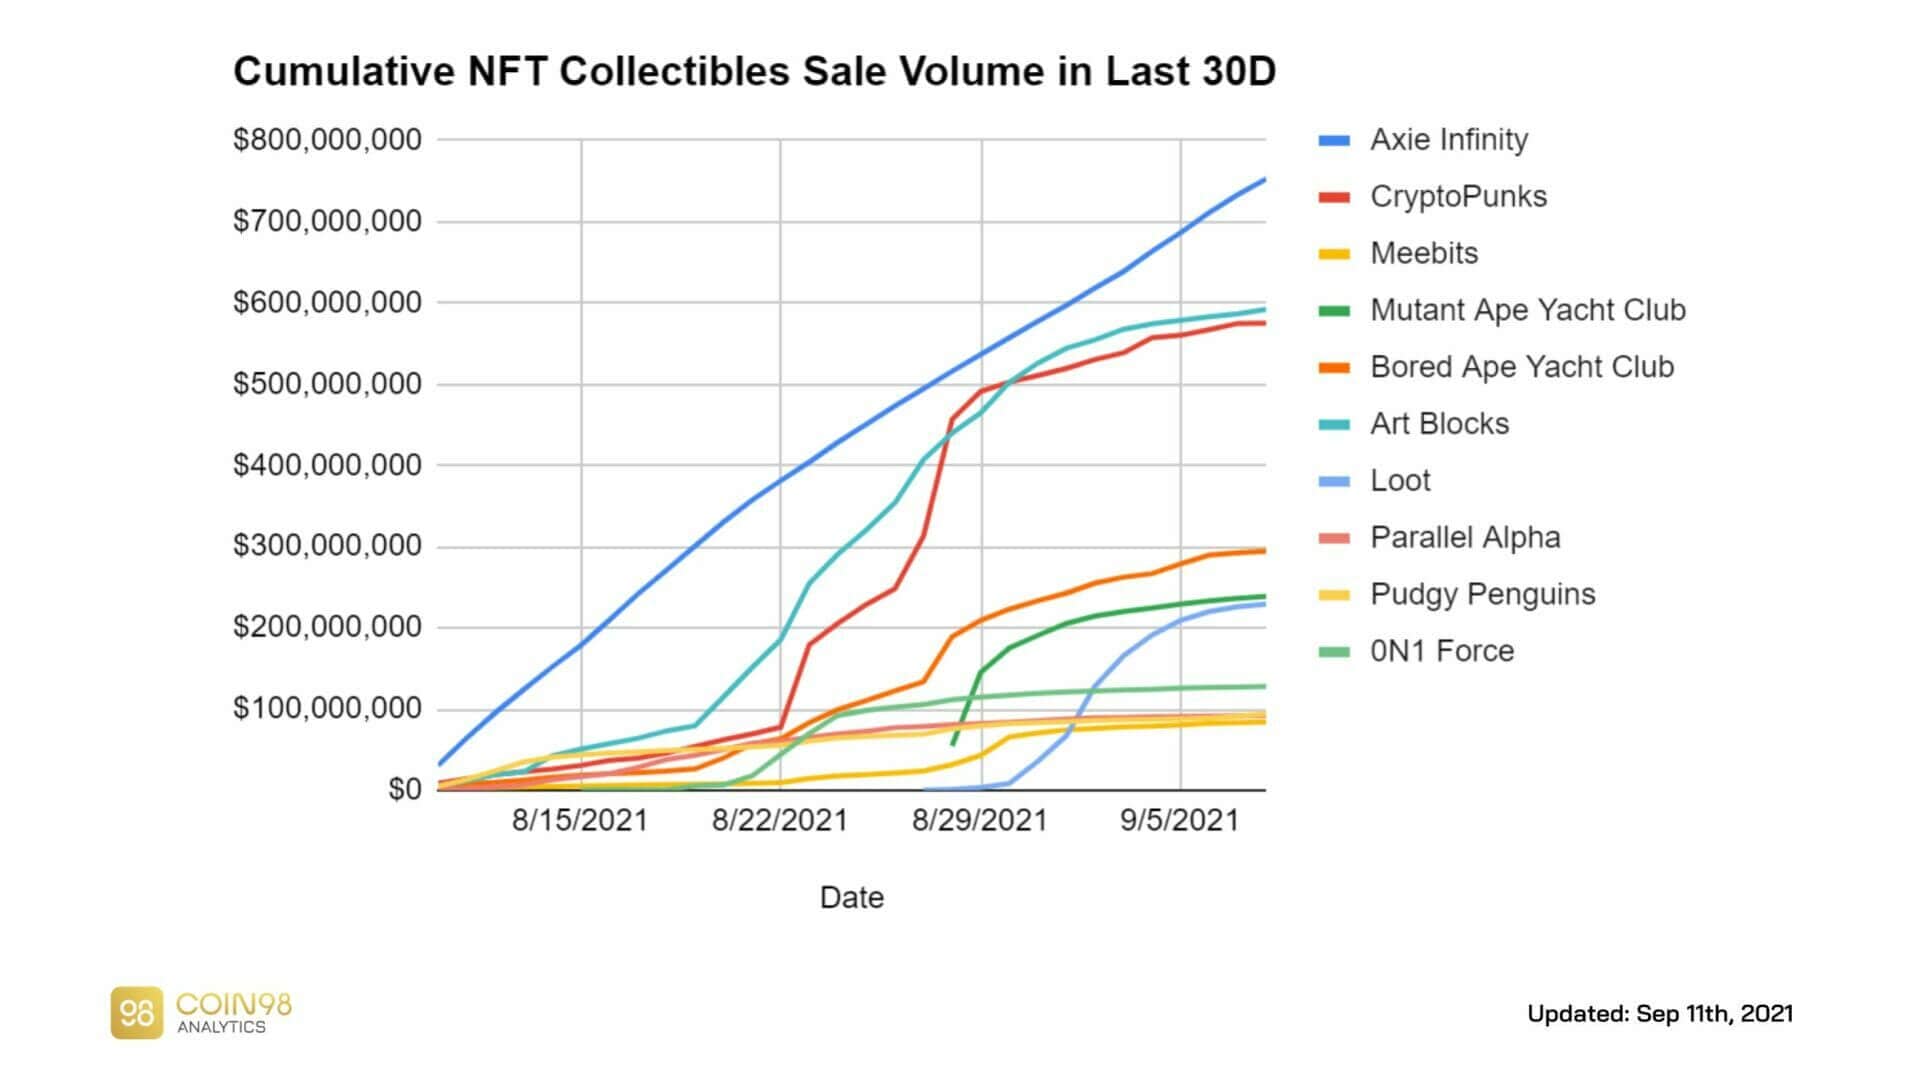 Volume cumulé des ventes de NFT entre août et septembre 2021 montrant la dominance du projets play to earn Axie Infinity (750 millions de dollars de ventes), des CryptoPunks (600 millions de dollars de ventes) et du projet Art Block (600 millions de dollars de ventes)